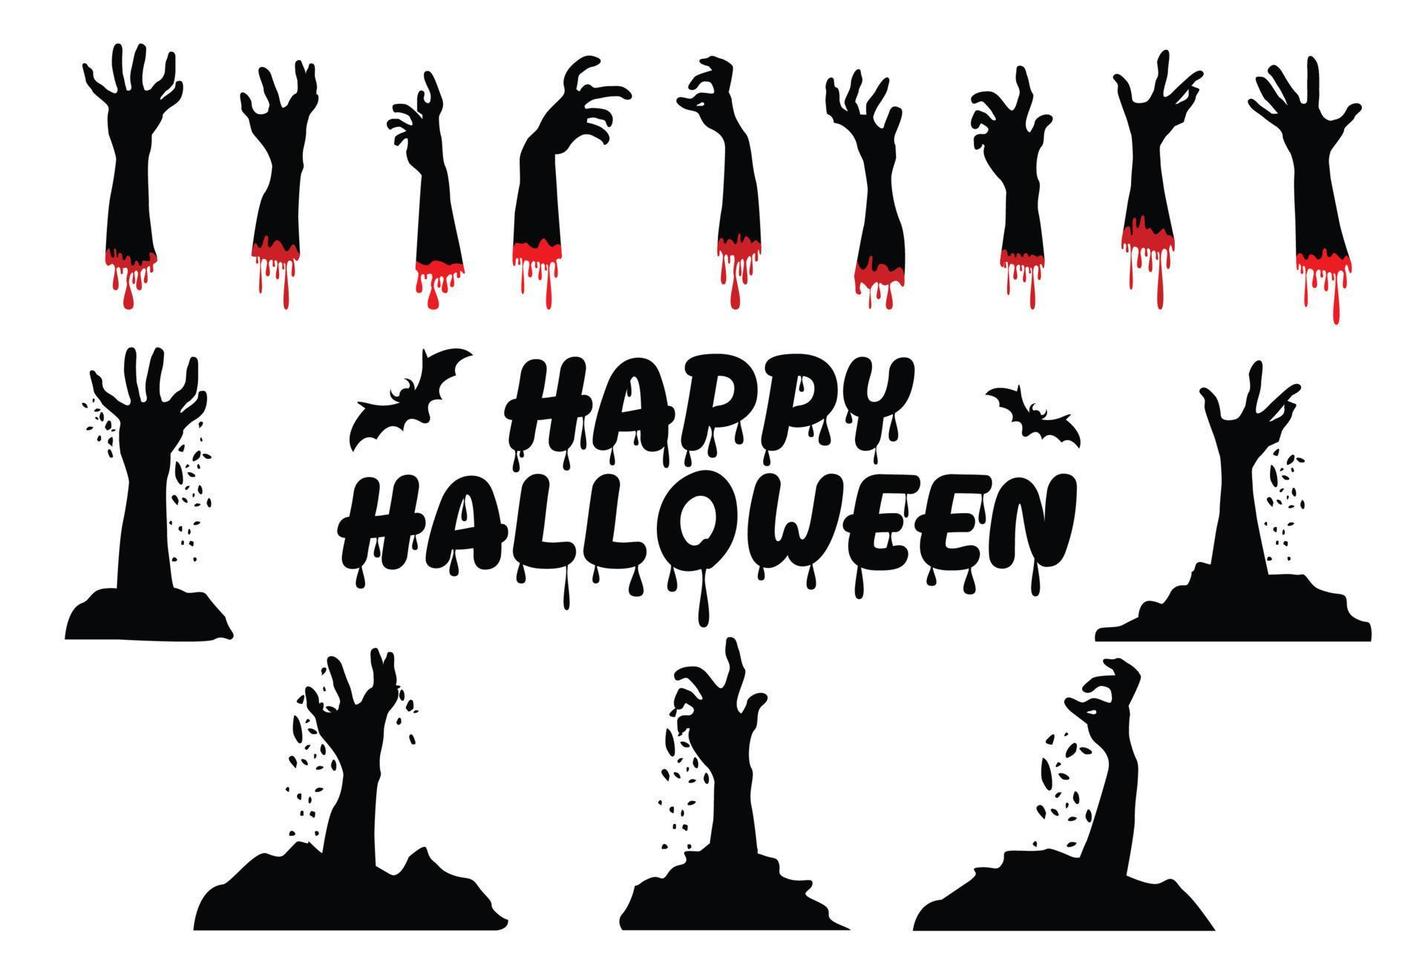 joyeux halloween, texte et chauves-souris, mains zombies, thème halloween, illustration vectorielle. vecteur